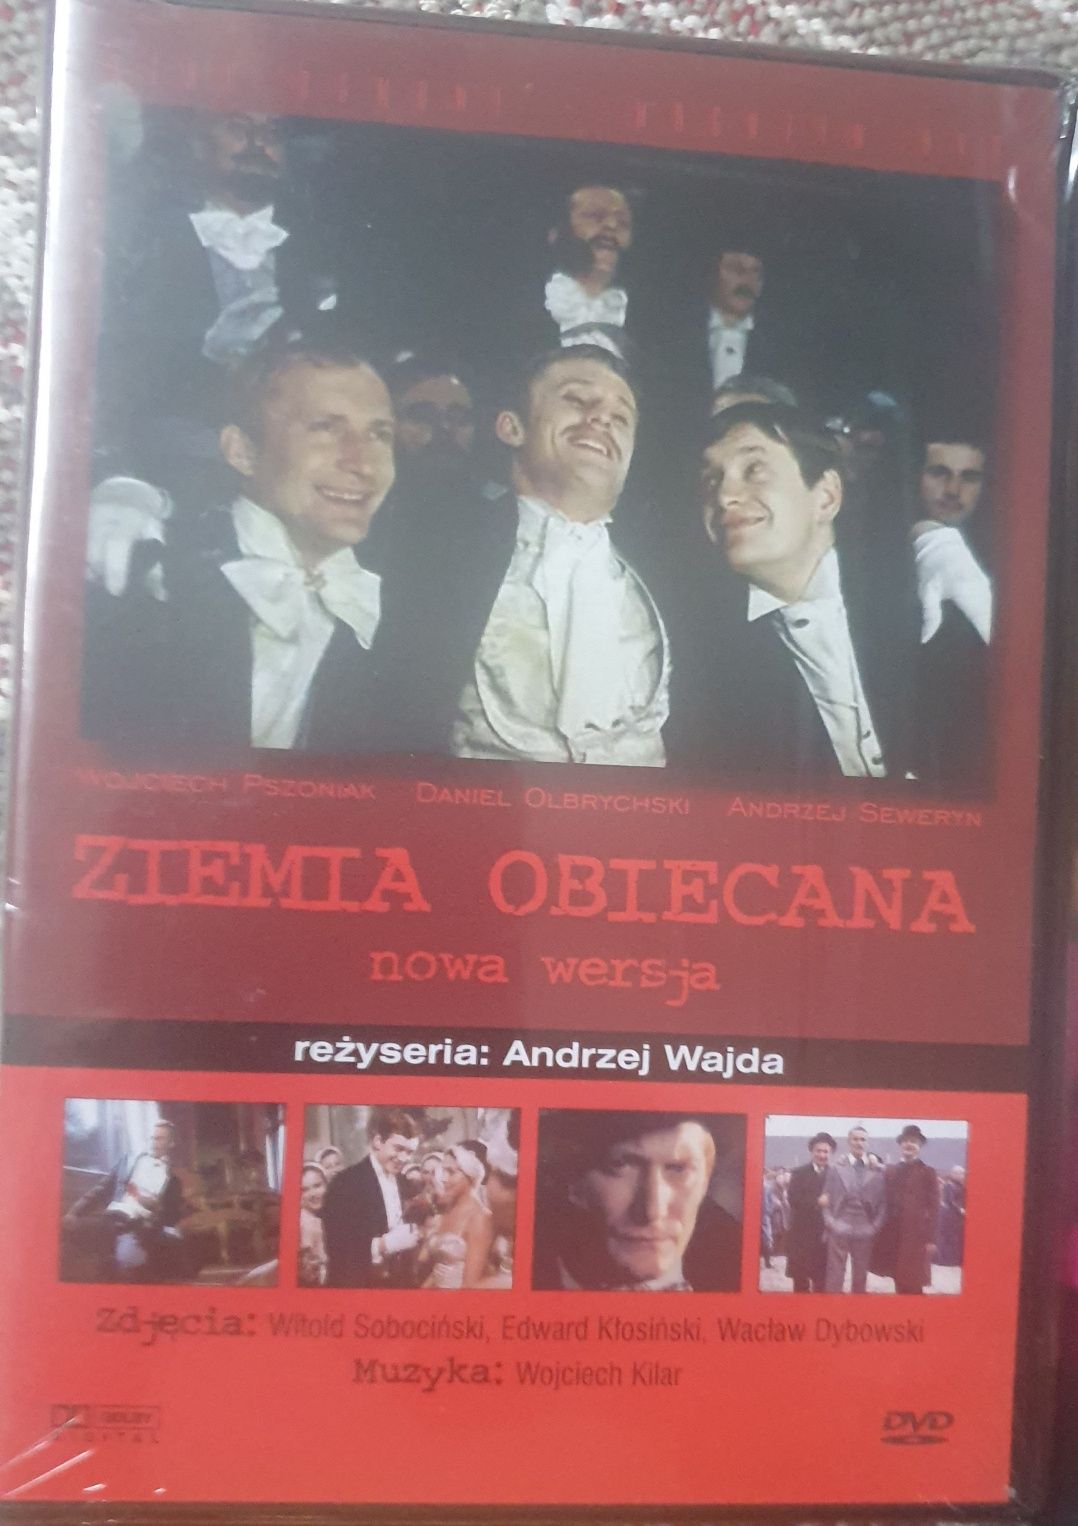 3 Dvd Wajda,Popiół I diament,Panny z Wilka,Pan Tadeusz